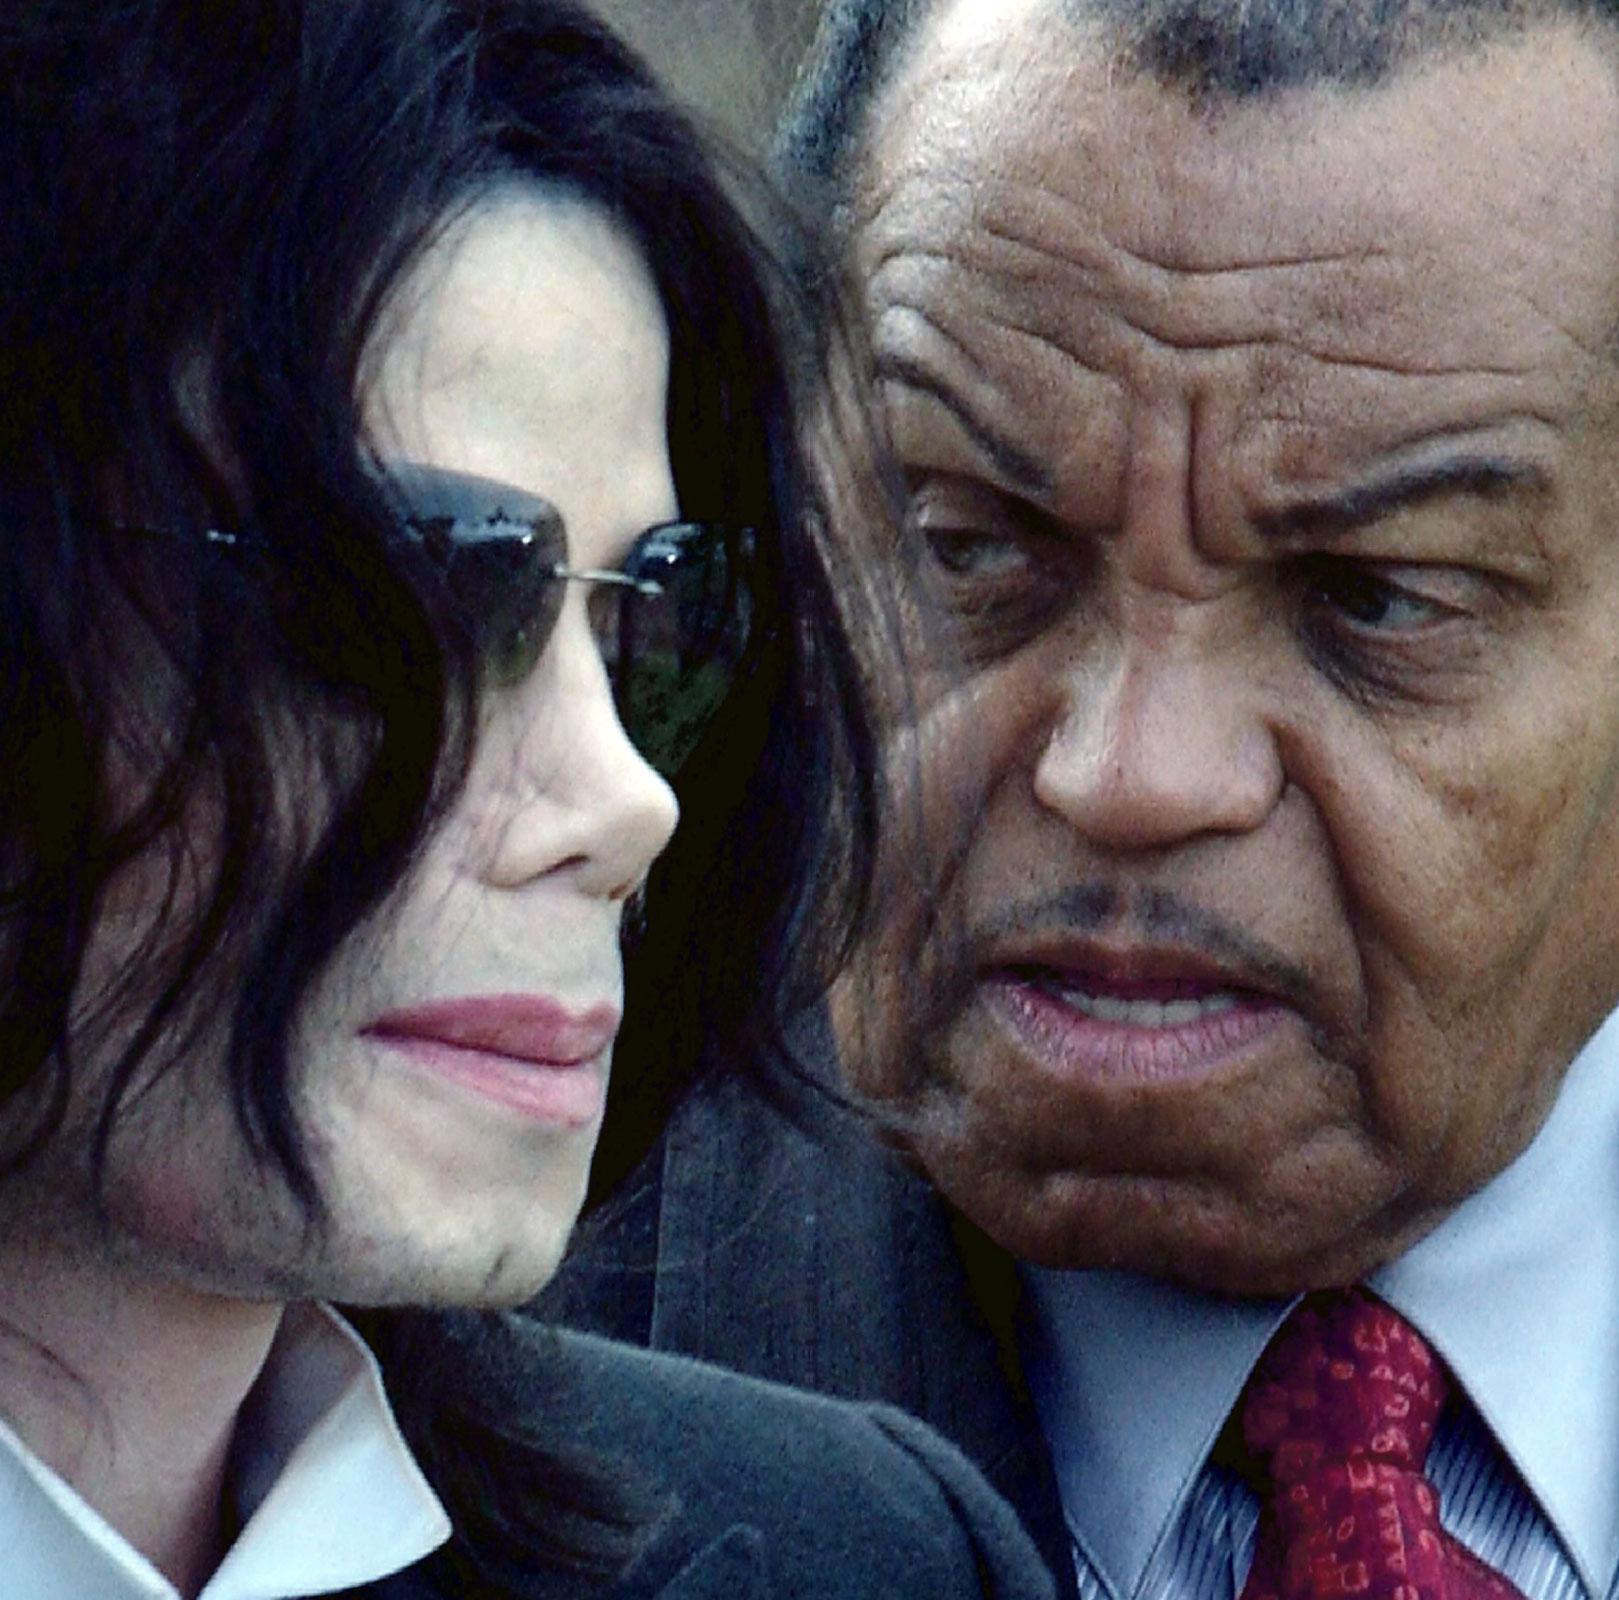 KRÄVER SVAR Michael Jacksons pappa Joe Jackson litar inte på läkarna och vill själv påverka utredningen. Den första obduktionsrapporten gav inte familjen tillräckliga svar. De menar att Michael Jackson varken var sjuk eller svag. ”Vi gillar inte det som pågår”, säger pappa Joe Jackson